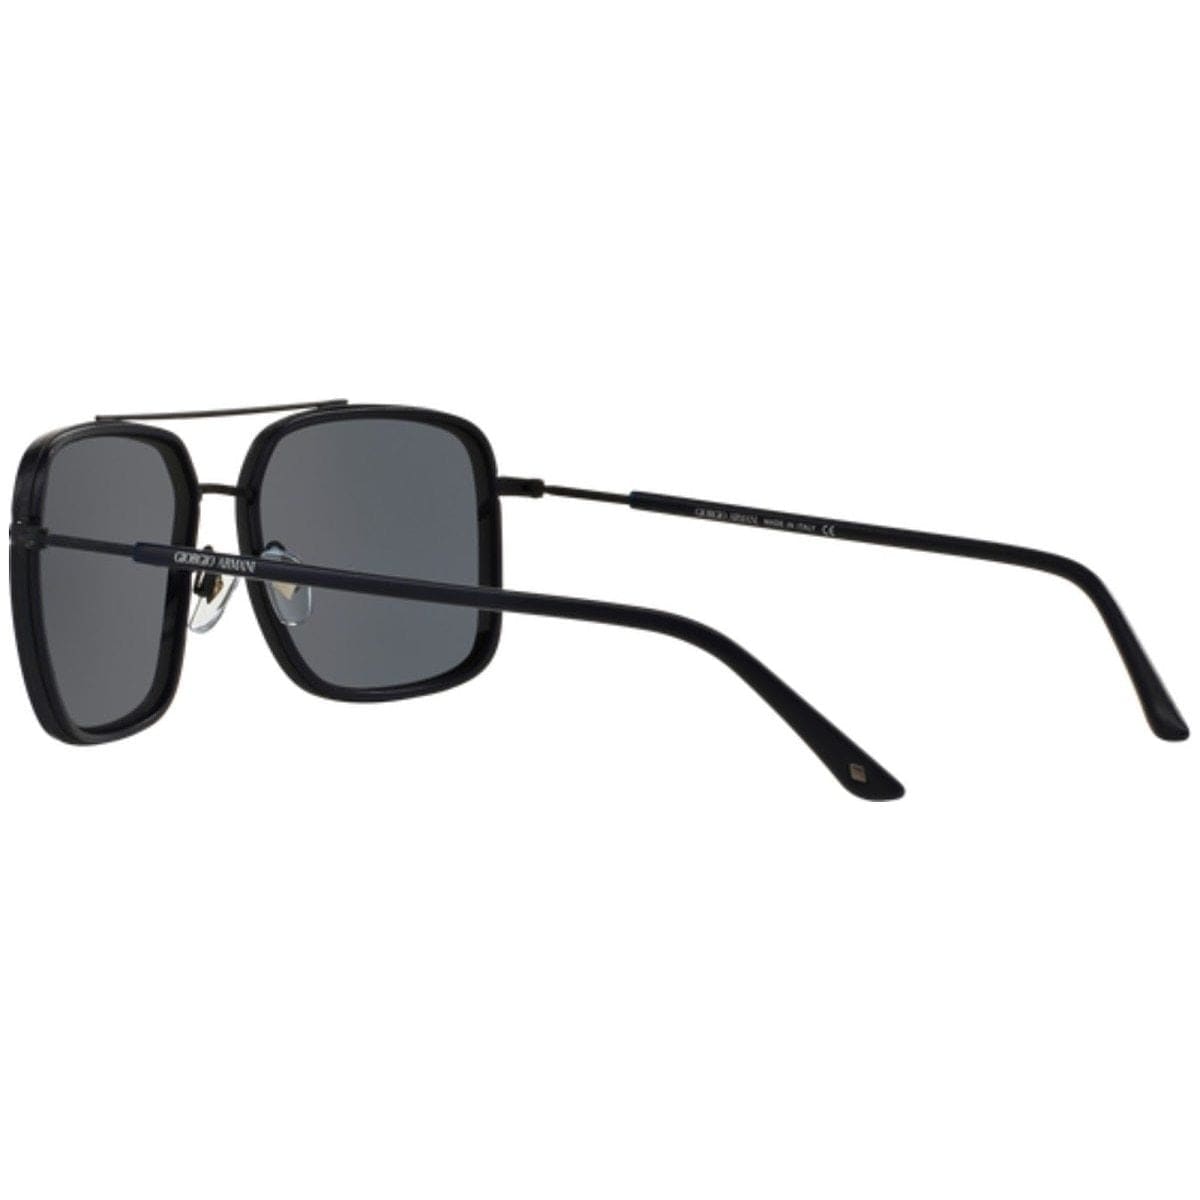 Giorgio Armani AR6031-305687 Blue Square Grey Lens Sunglasses Frames 8053672466836